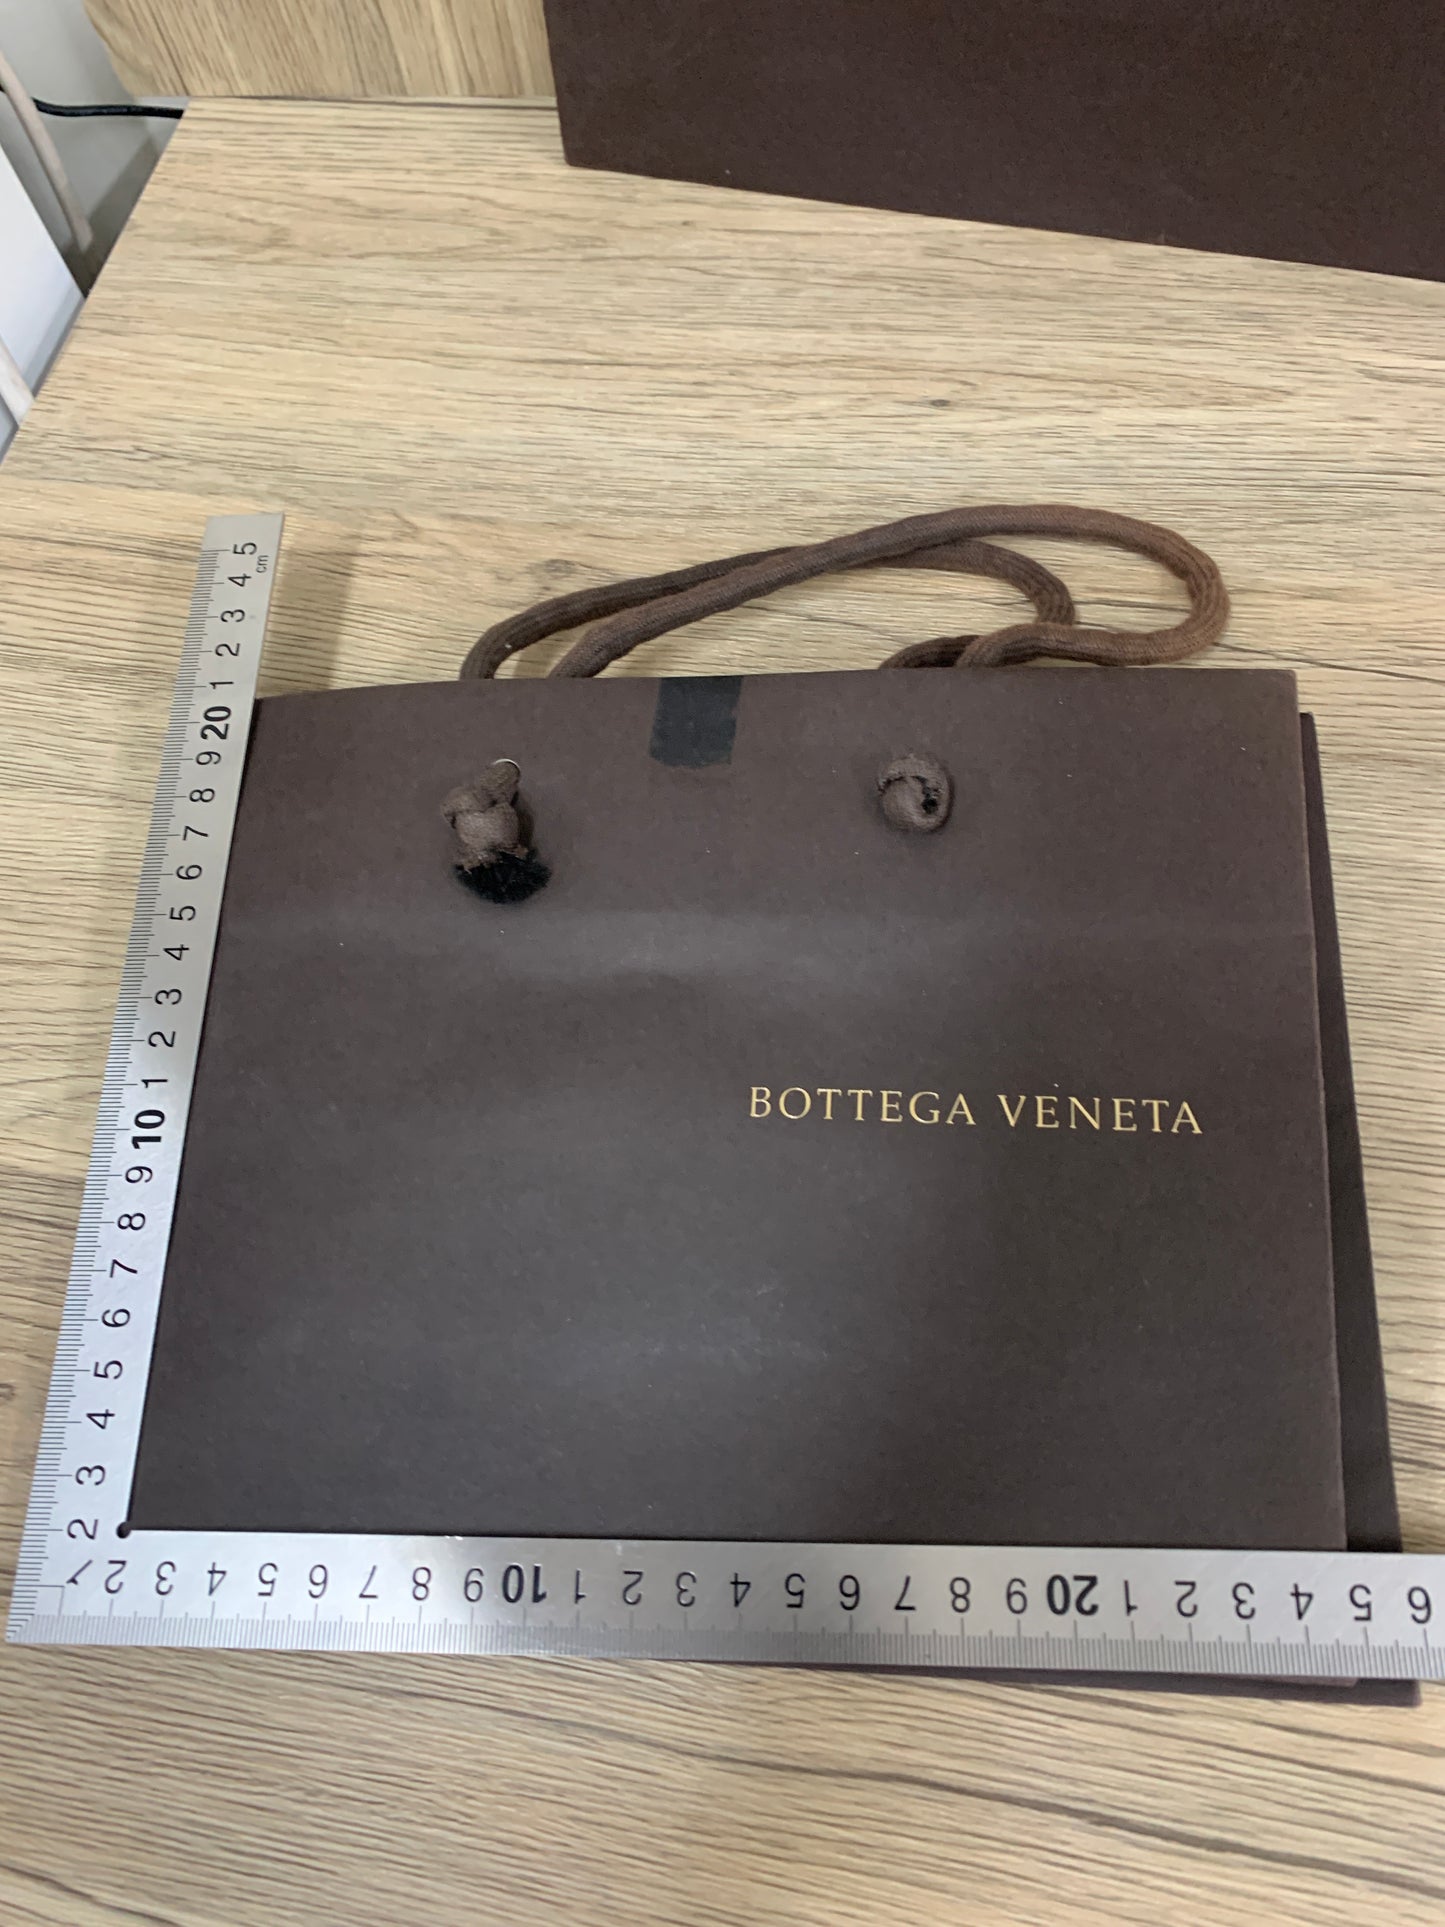 正品 Bottega veneta bv 紙袋 x 3 套裝棕色禮品錢包化妝品手提包